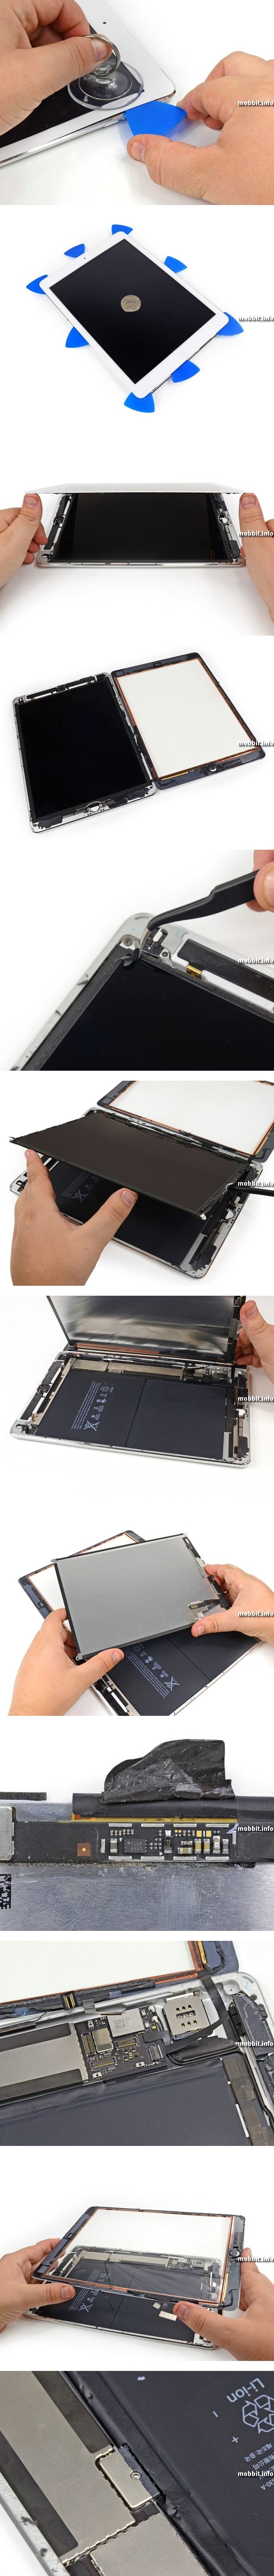 Новый планшет Apple iPad Air разобран специалистами iFixit